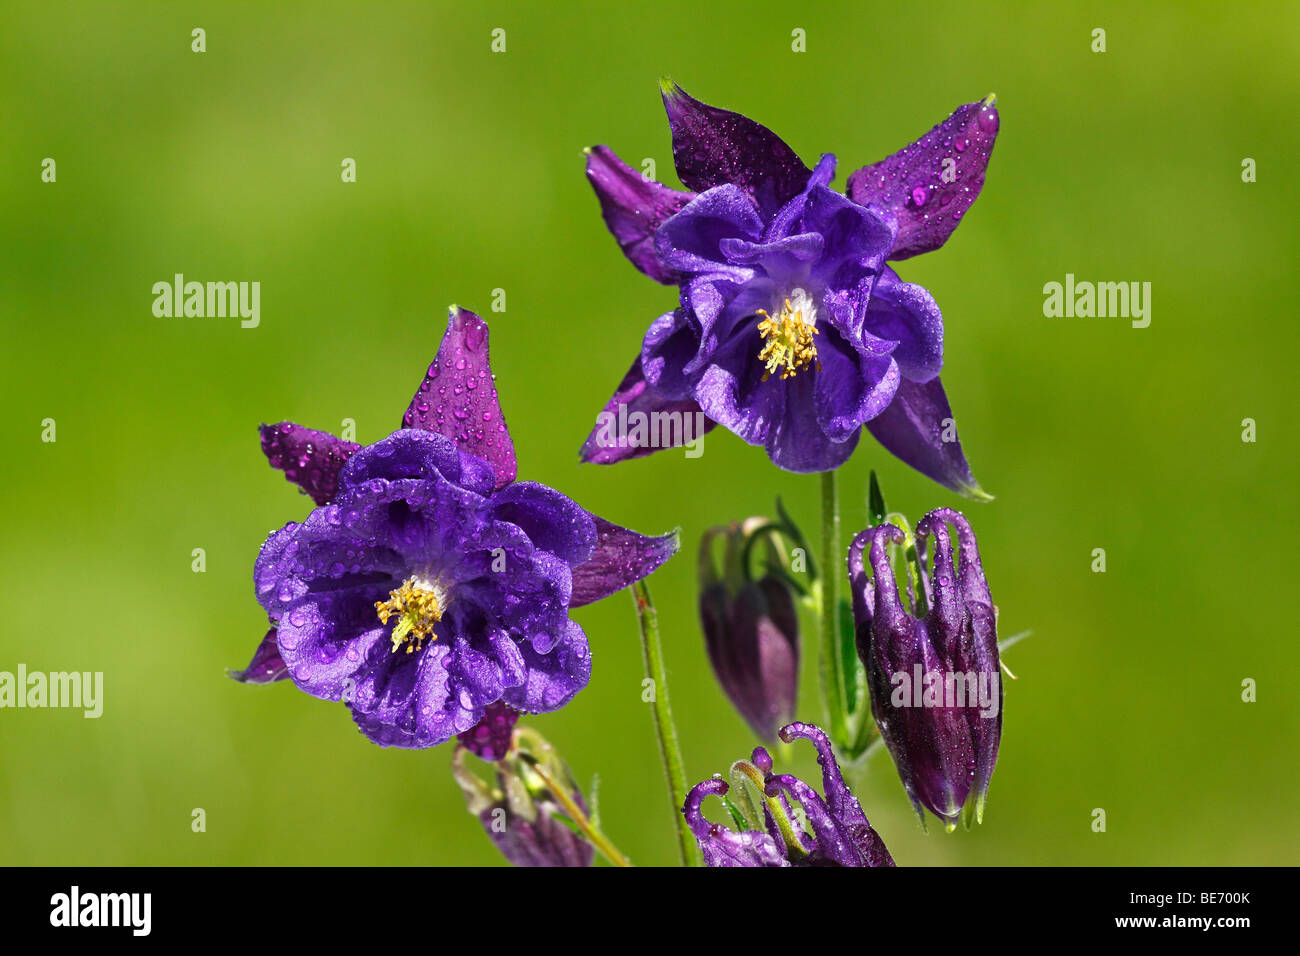 Cultivar Columbine (Aquilegia), plantas ornamentales, plantas de jardín venenoso Foto de stock